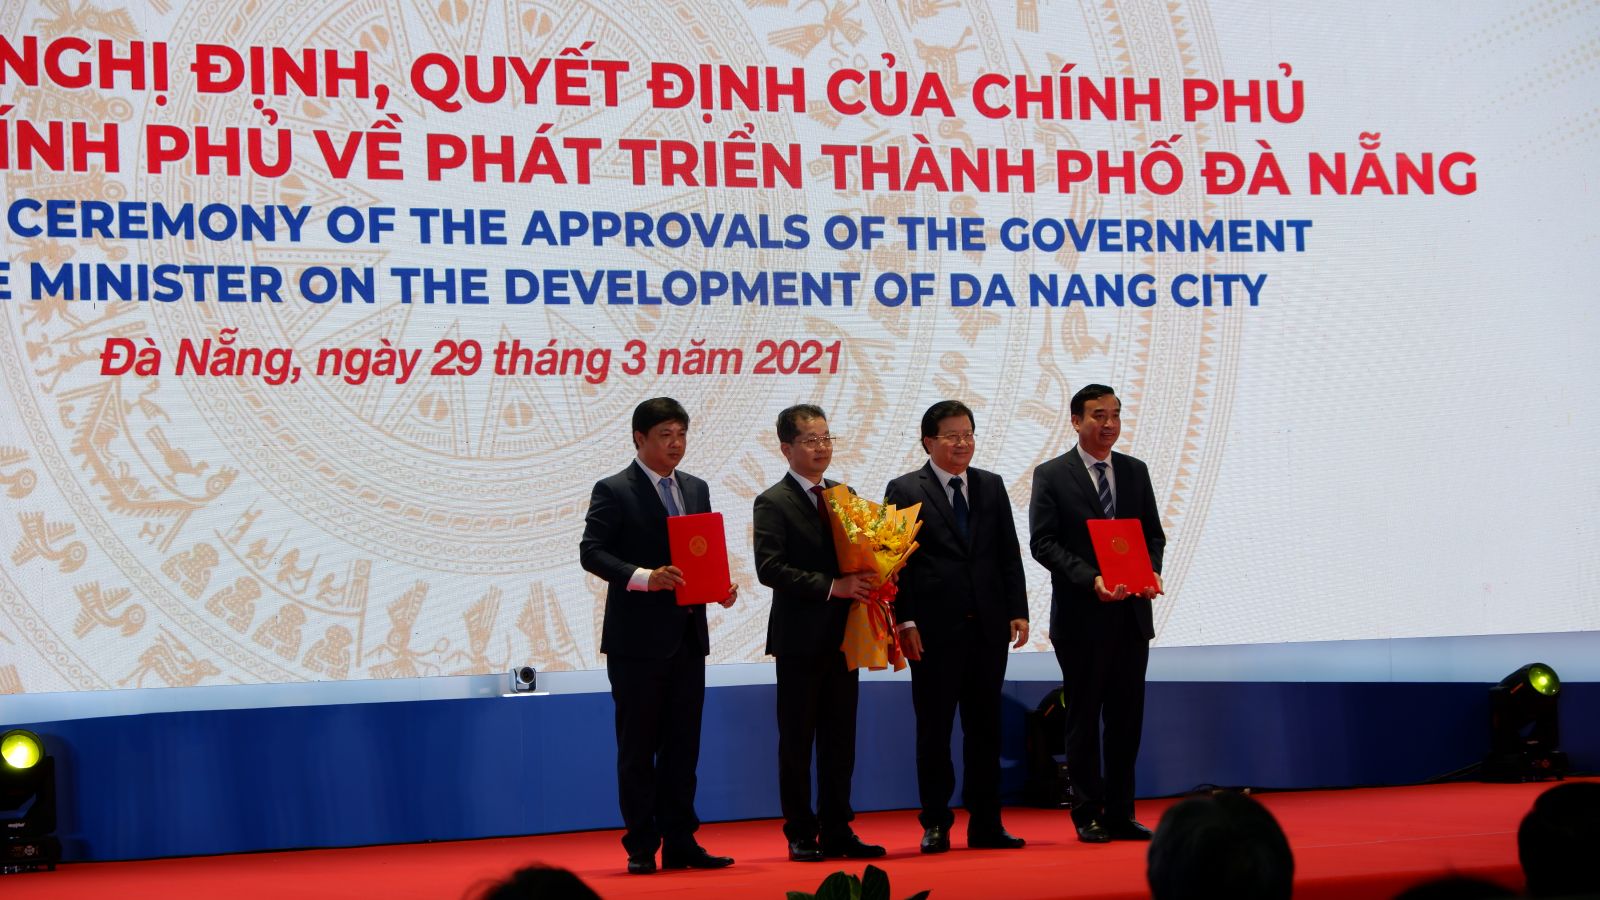 Phó Thủ tướng Chính phủ Trịnh Đình Dũng trao các Nghị định, Quyết định của Chính phủ, Thủ tướng Chính phủ về phát triển Đà Nẵng.